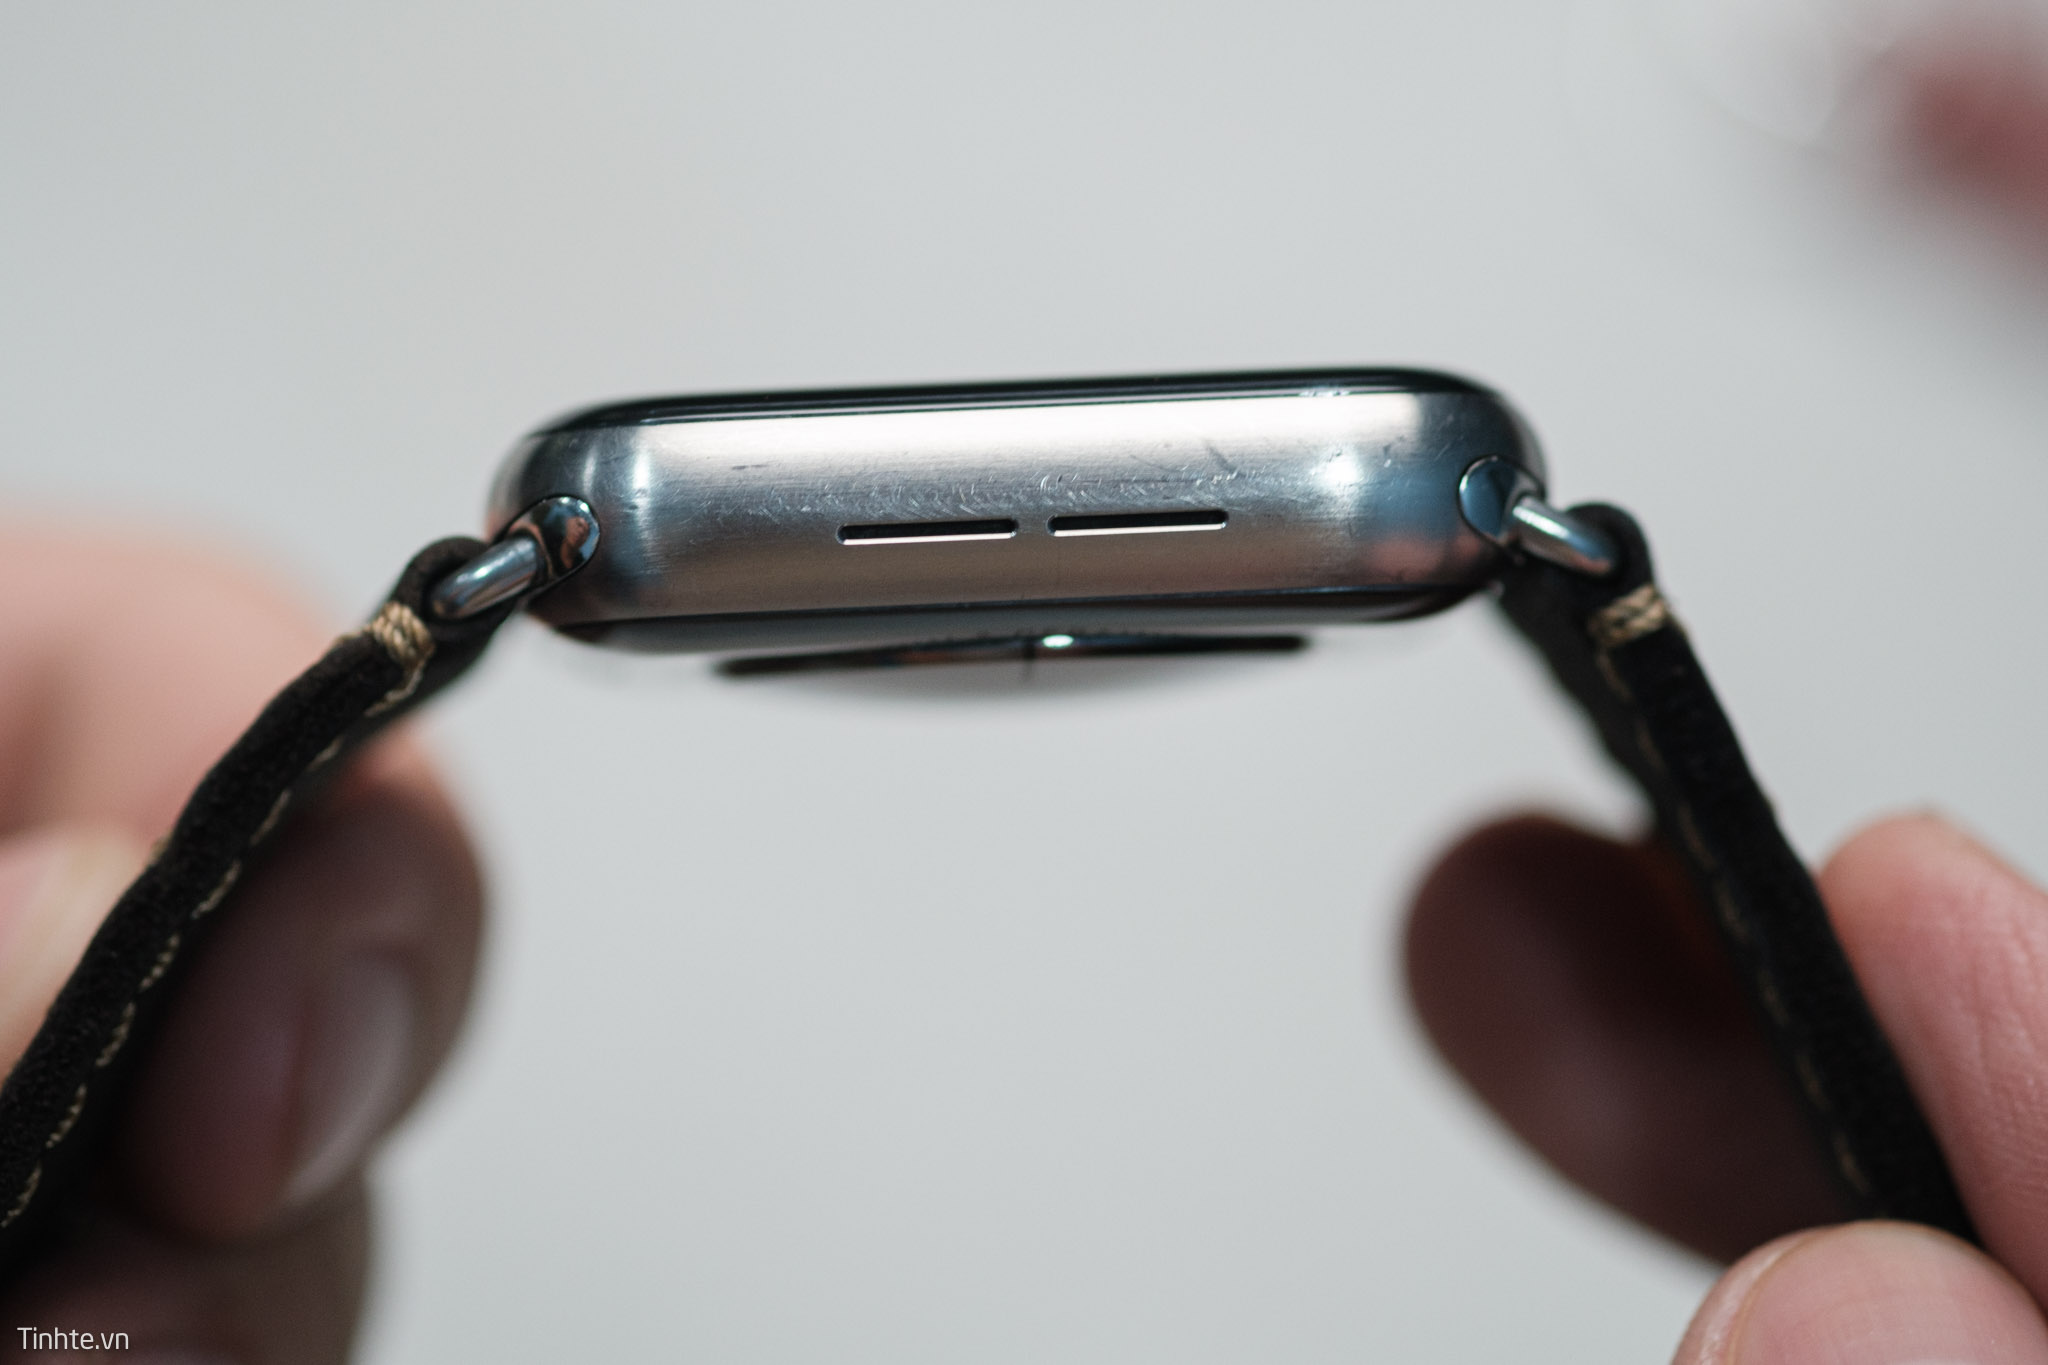 Apple Watch S5 Titanium trầy thấy thương, hy vọng iPhone Pro sẽ không vậy